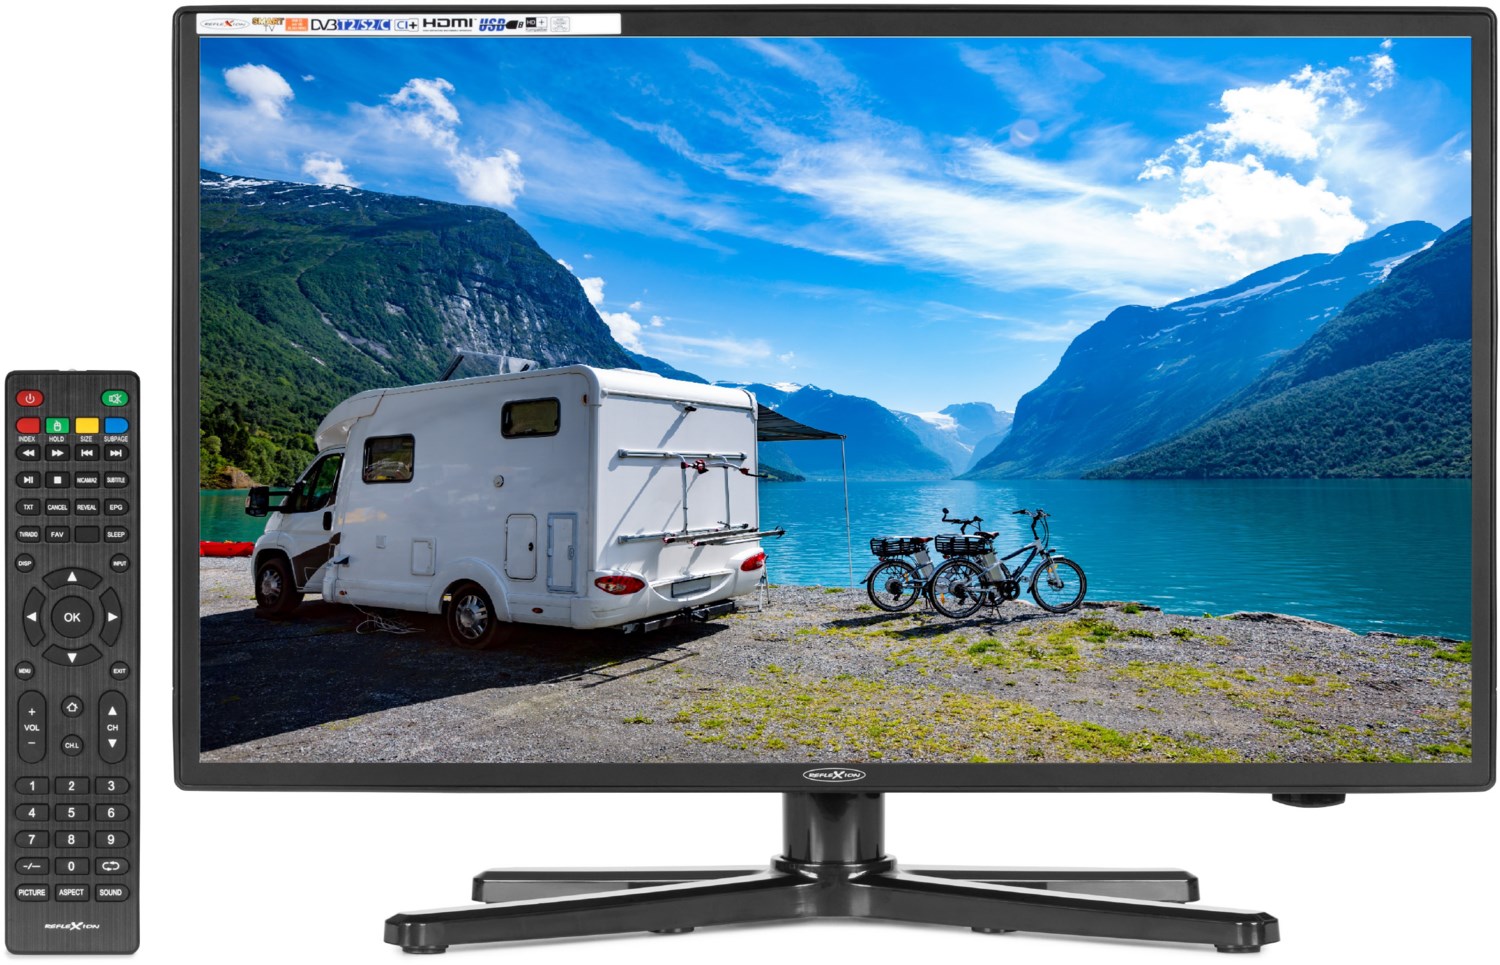 Tv Lg 24tq520s-pz Smart Hd 24 60cm